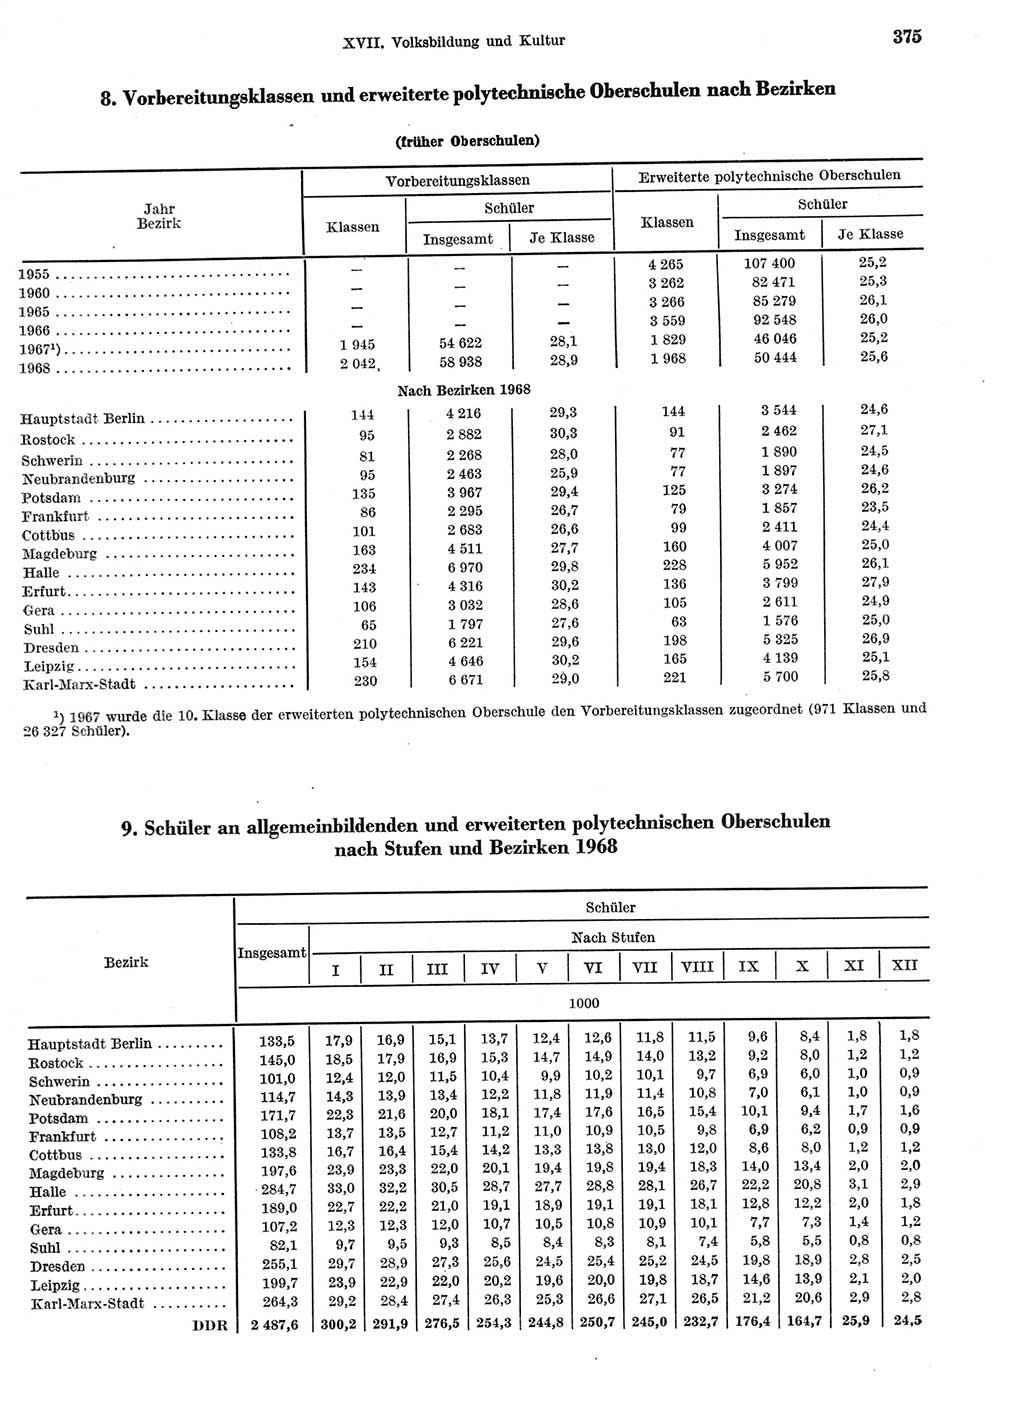 Statistisches Jahrbuch der Deutschen Demokratischen Republik (DDR) 1969, Seite 375 (Stat. Jb. DDR 1969, S. 375)